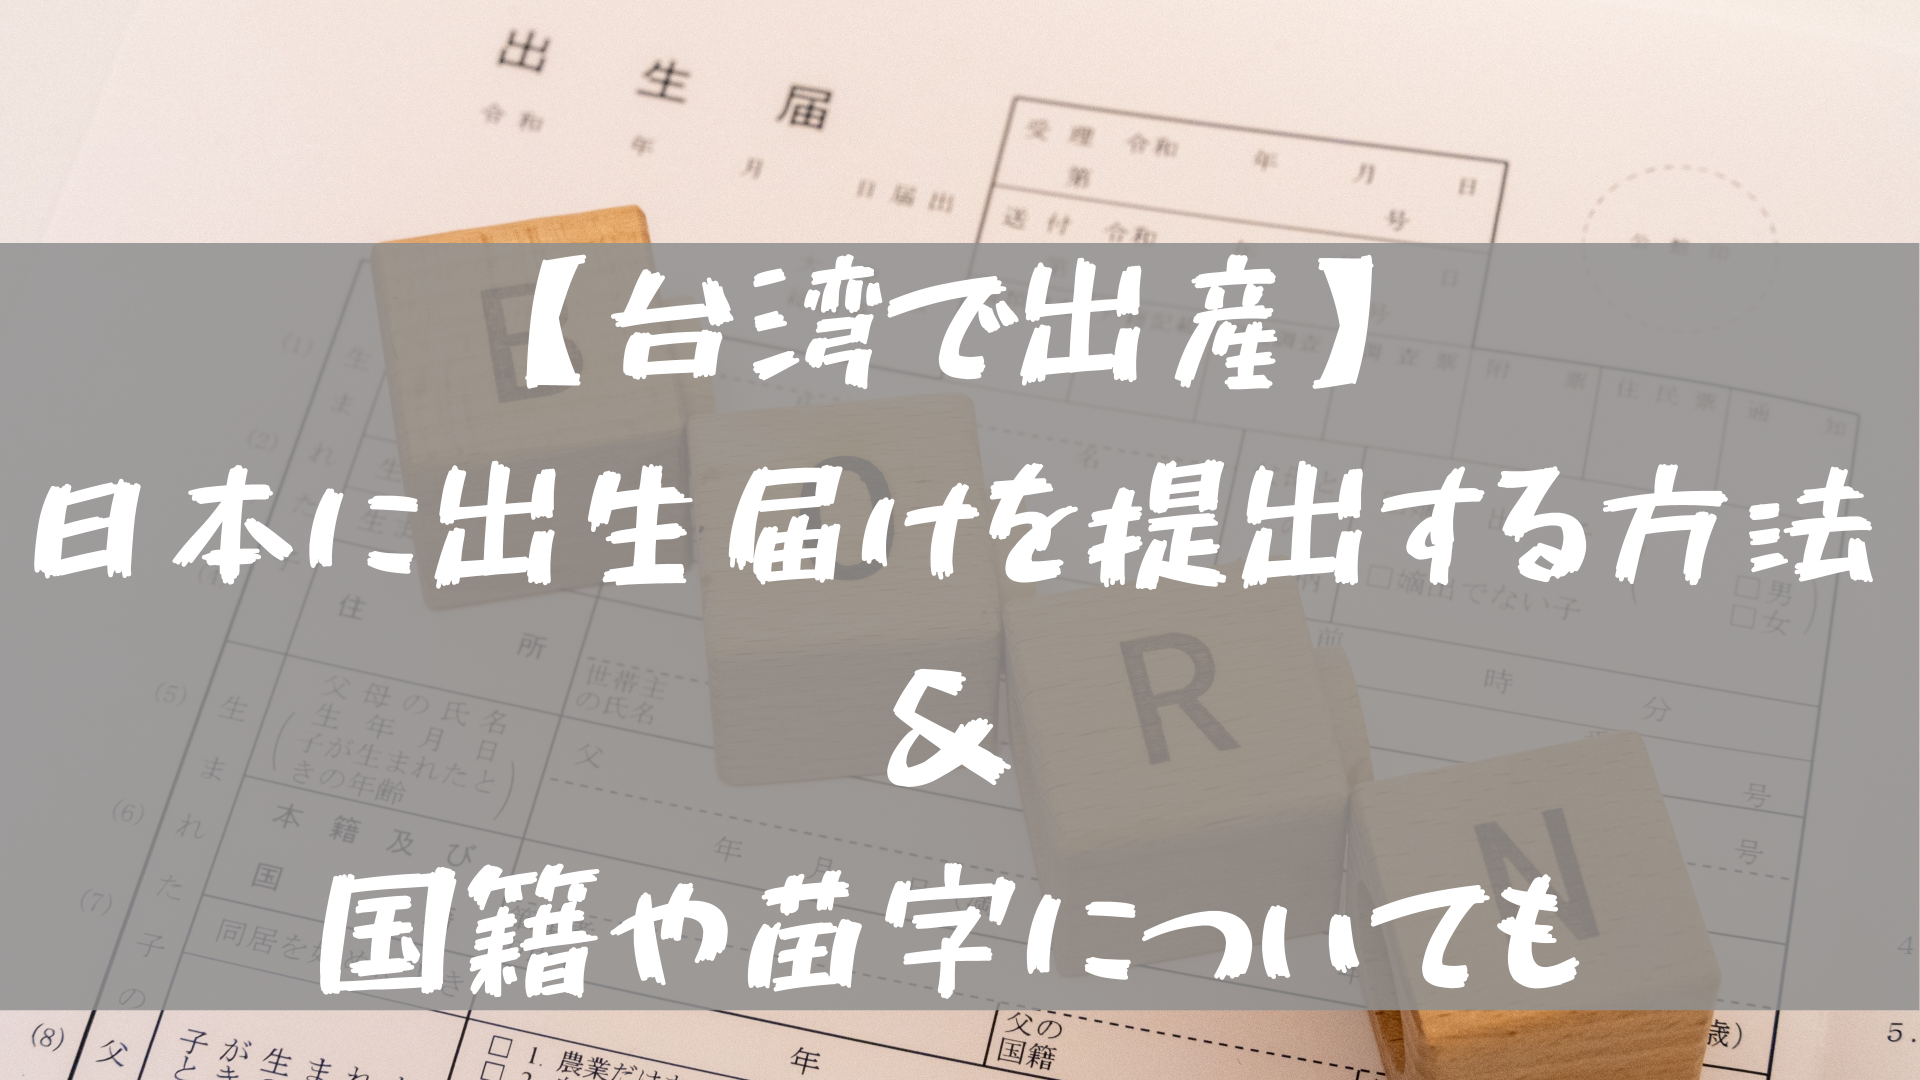 台湾で出産 日本に出生届けを提出する方法 国籍や苗字についても 台湾ってどーなん